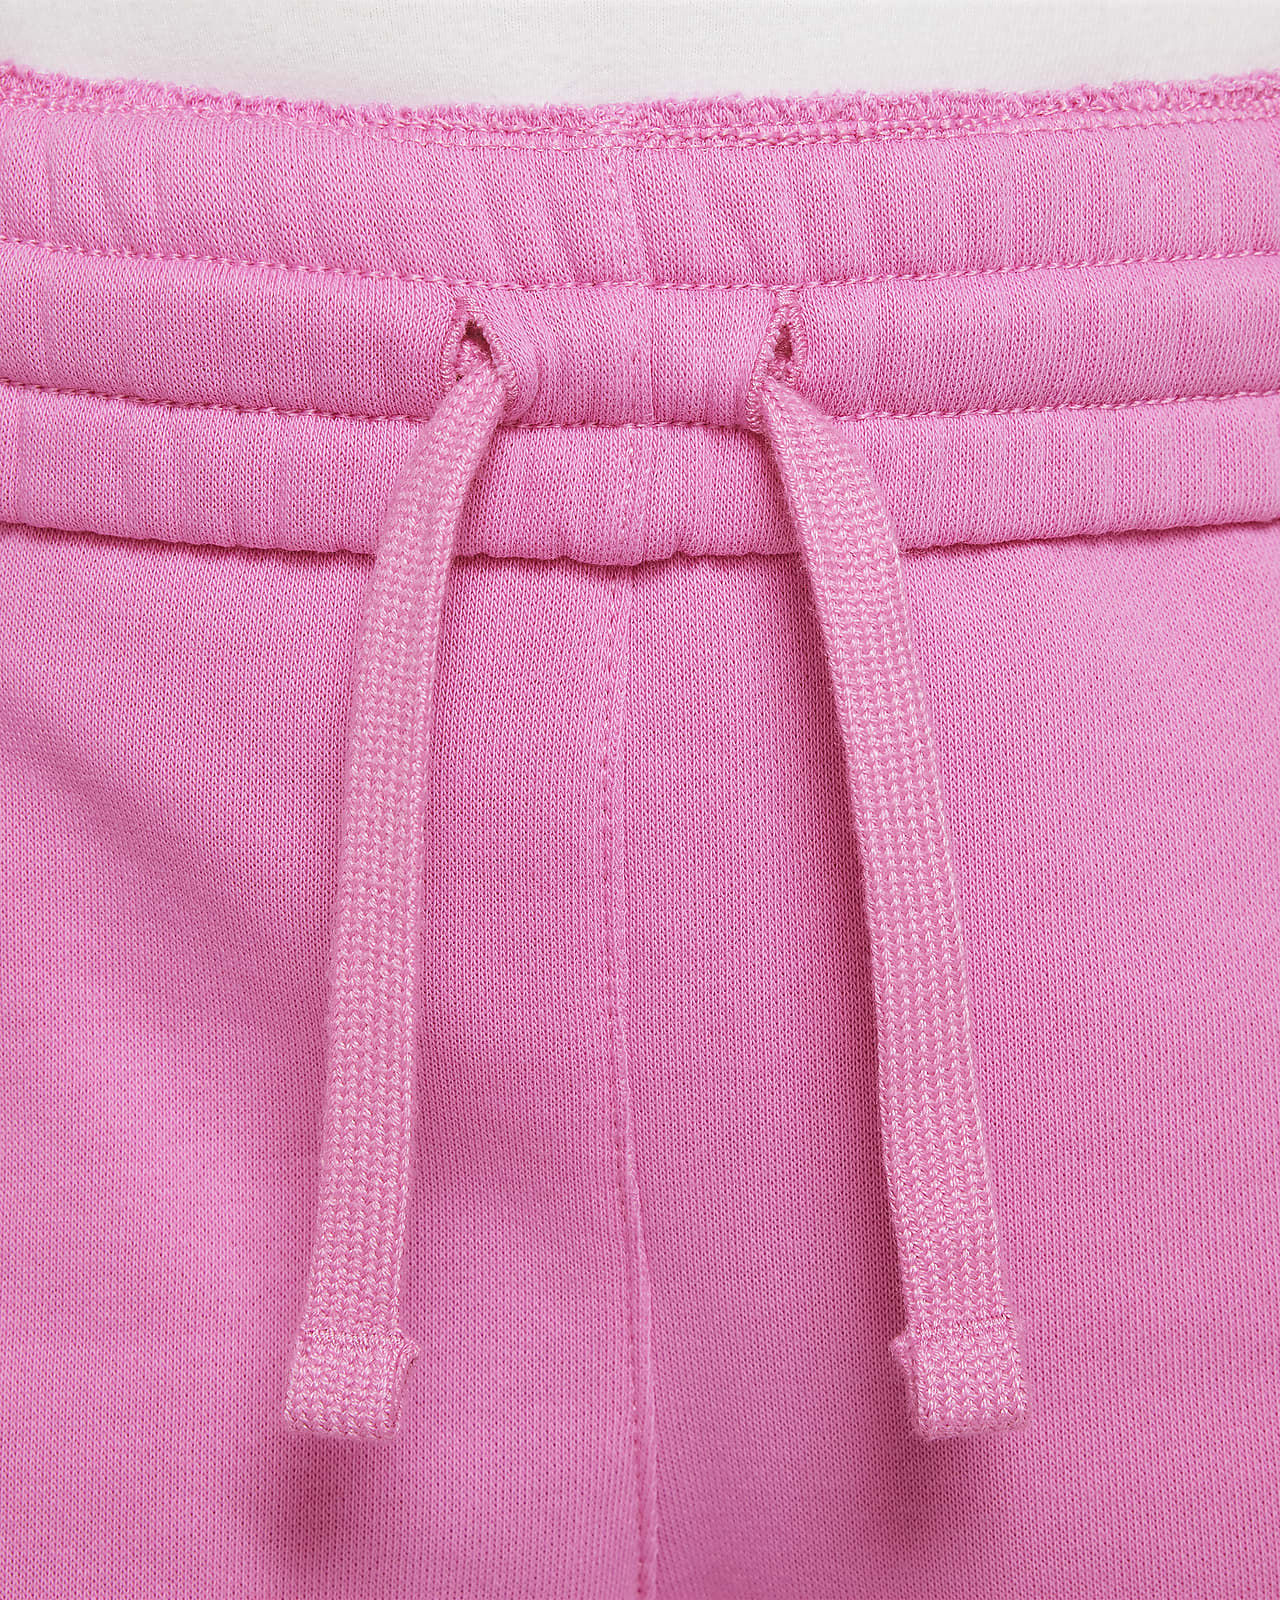 Buy Girls Pink Solid Regular Fit Track Pants Online - 715597